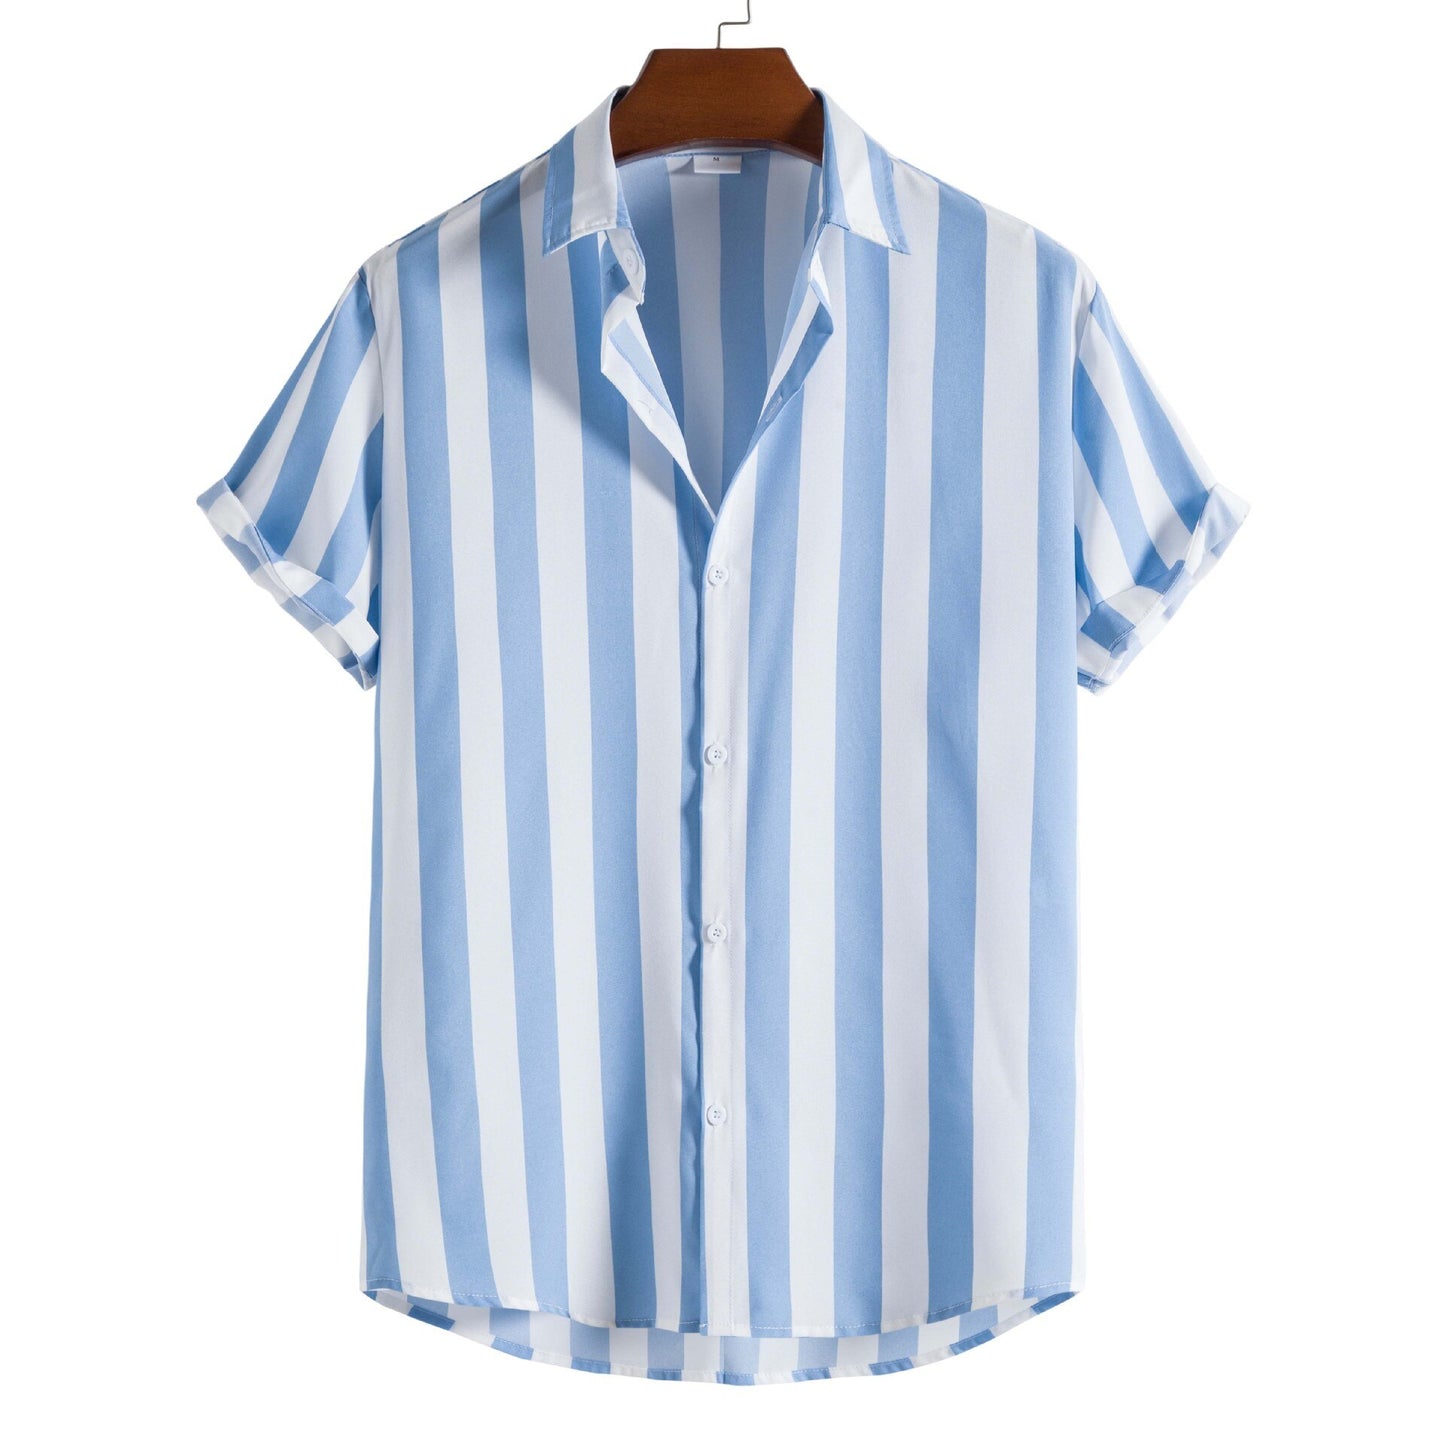 Stripe Print Loose Casual Beach Shirt